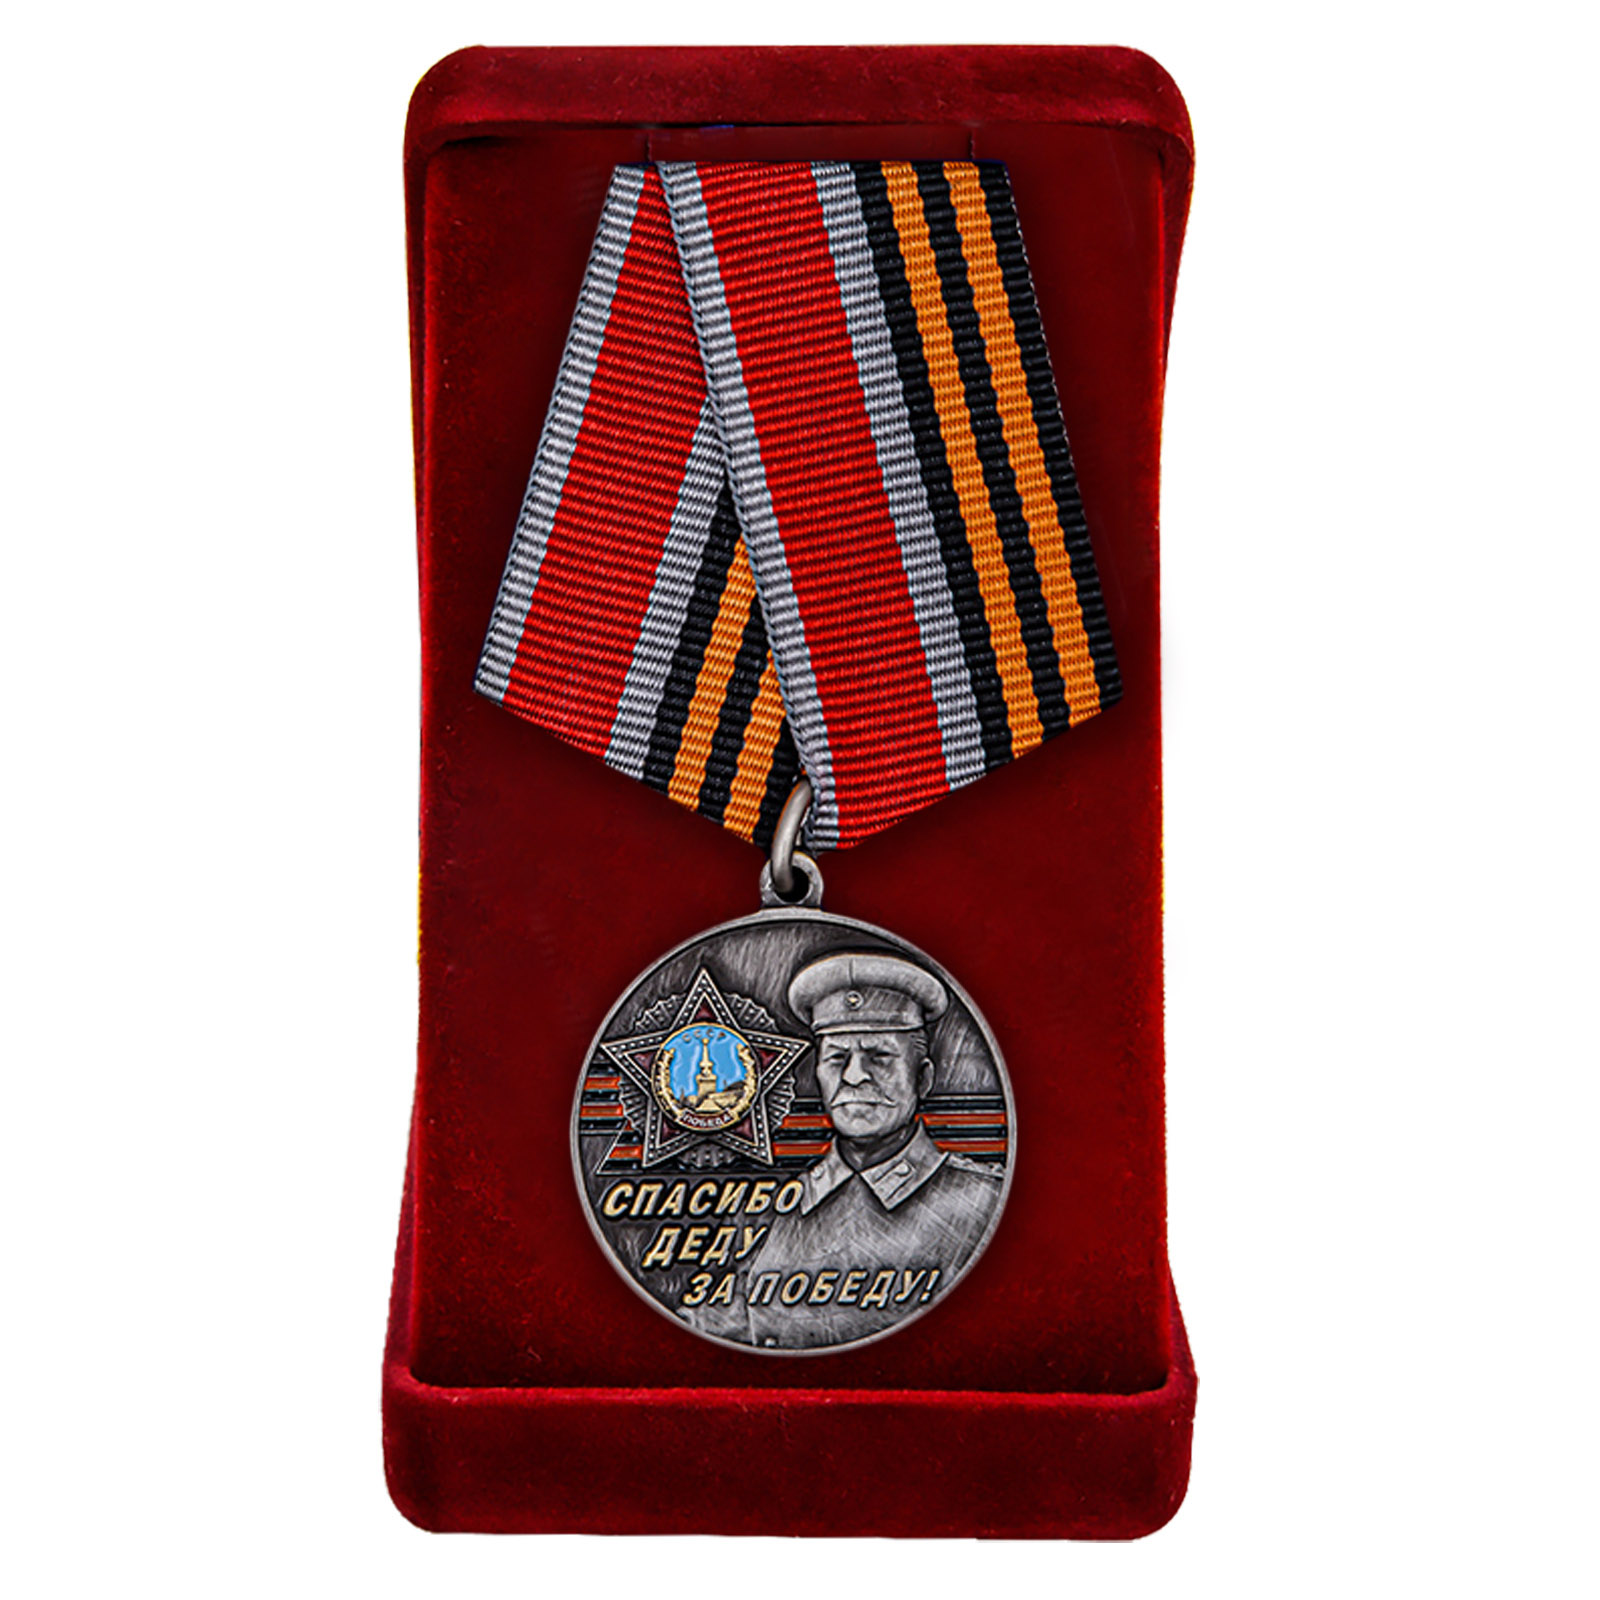 Купить памятную медаль со Сталиным Спасибо деду за Победу! в подарок